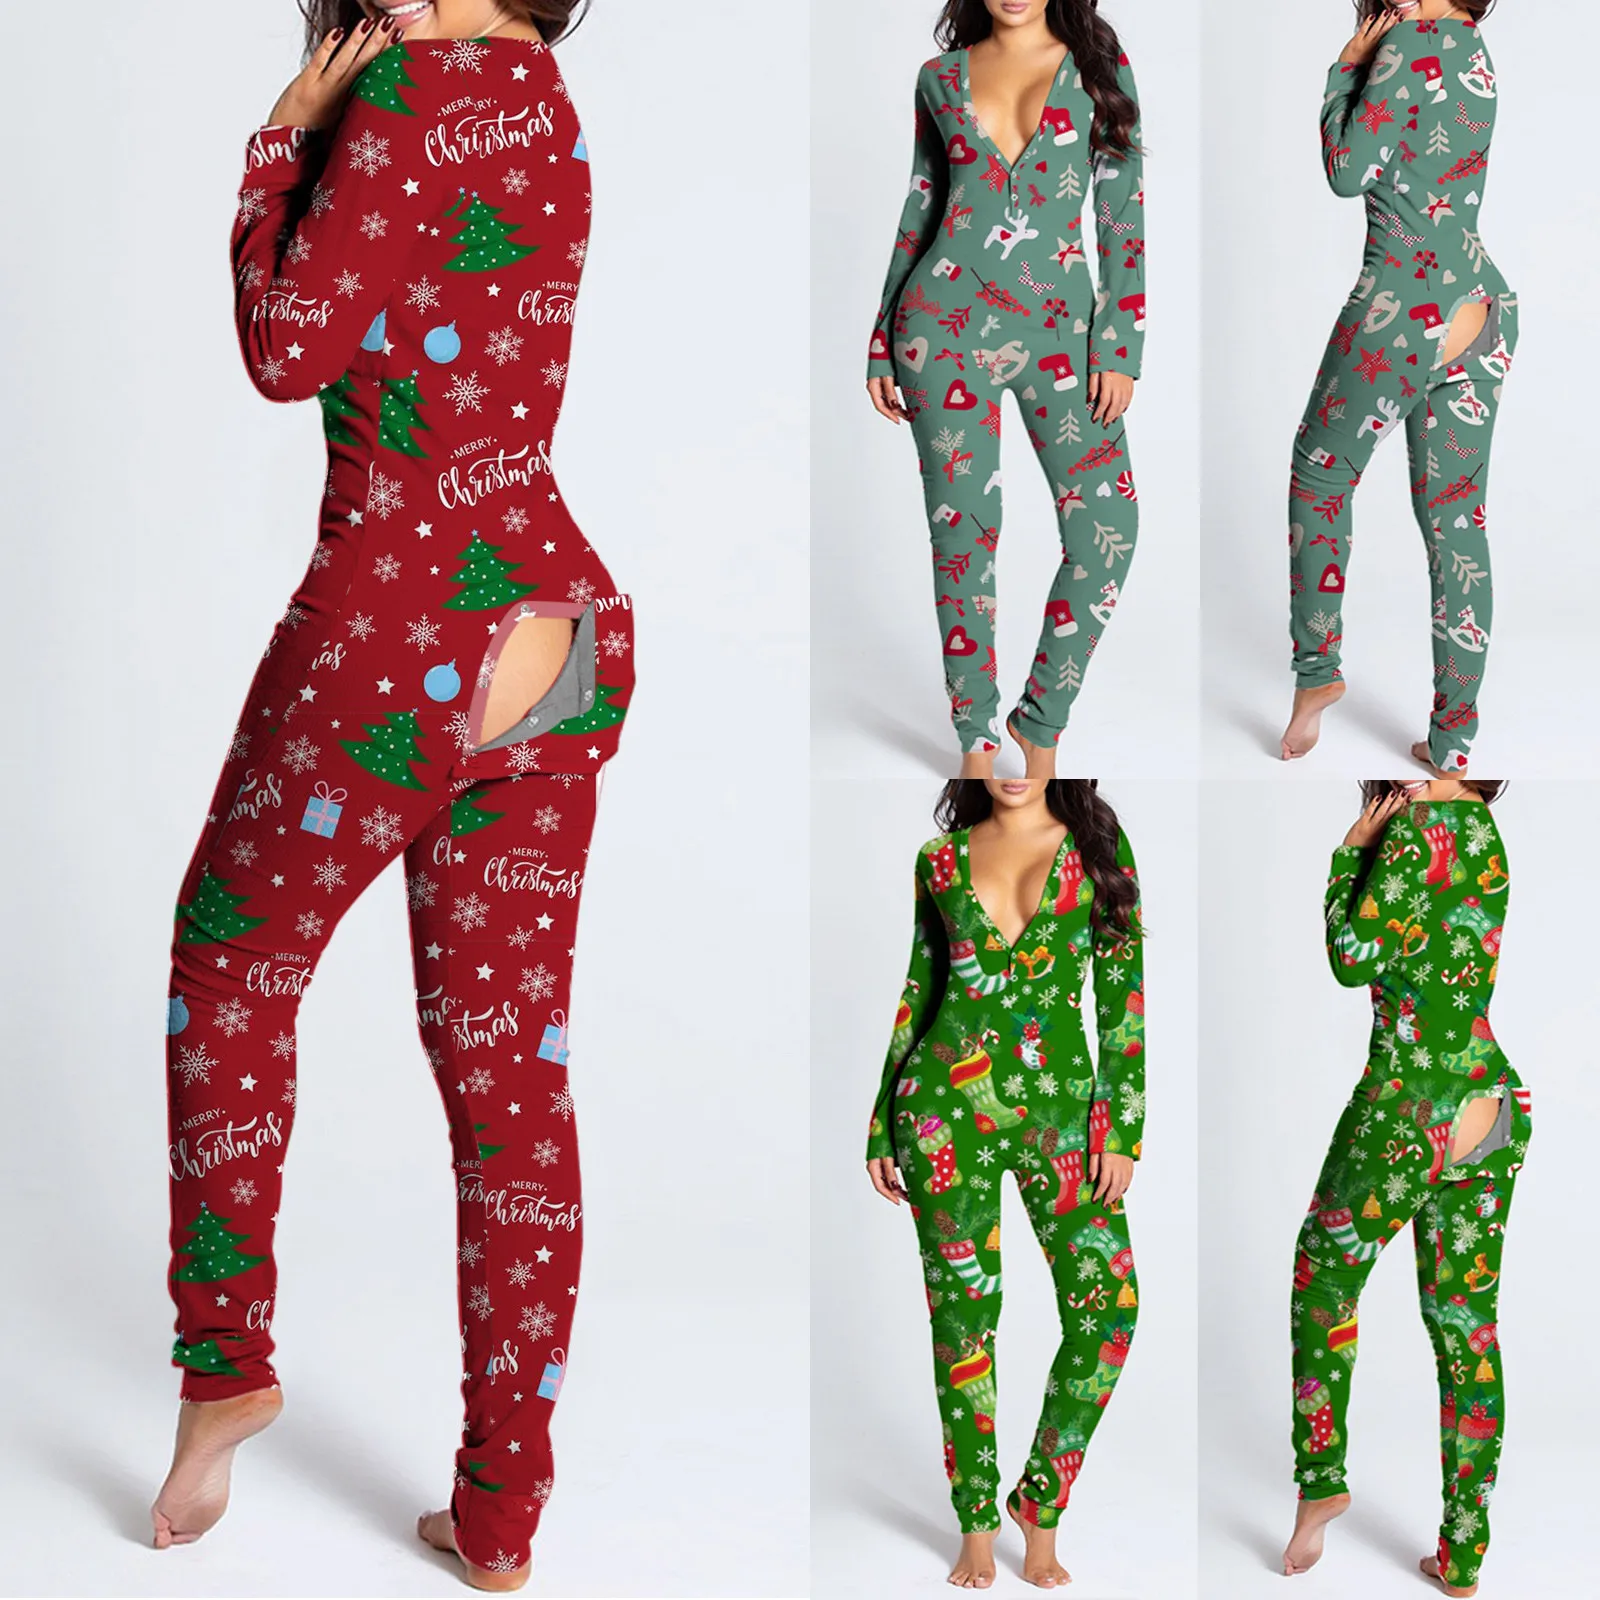 

Комбинезон с застежкой-молнией спереди и сзади, пикантные комбинезоны, пижама, домашняя одежда, пижама, Рождественская женская пижама с V-об...